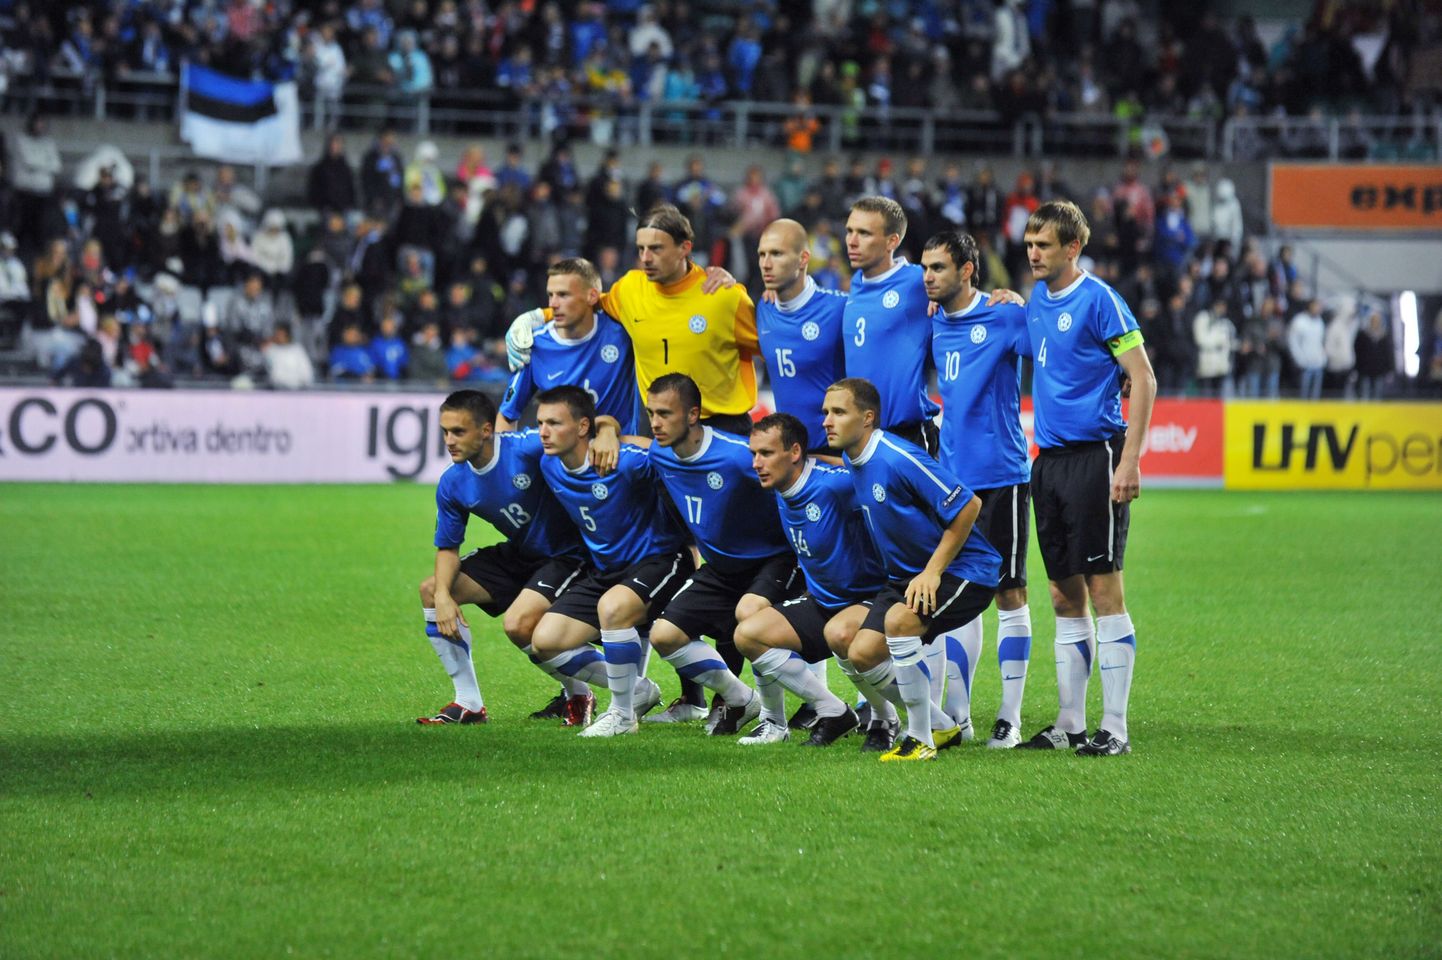 Eesti jalgpallikoondis